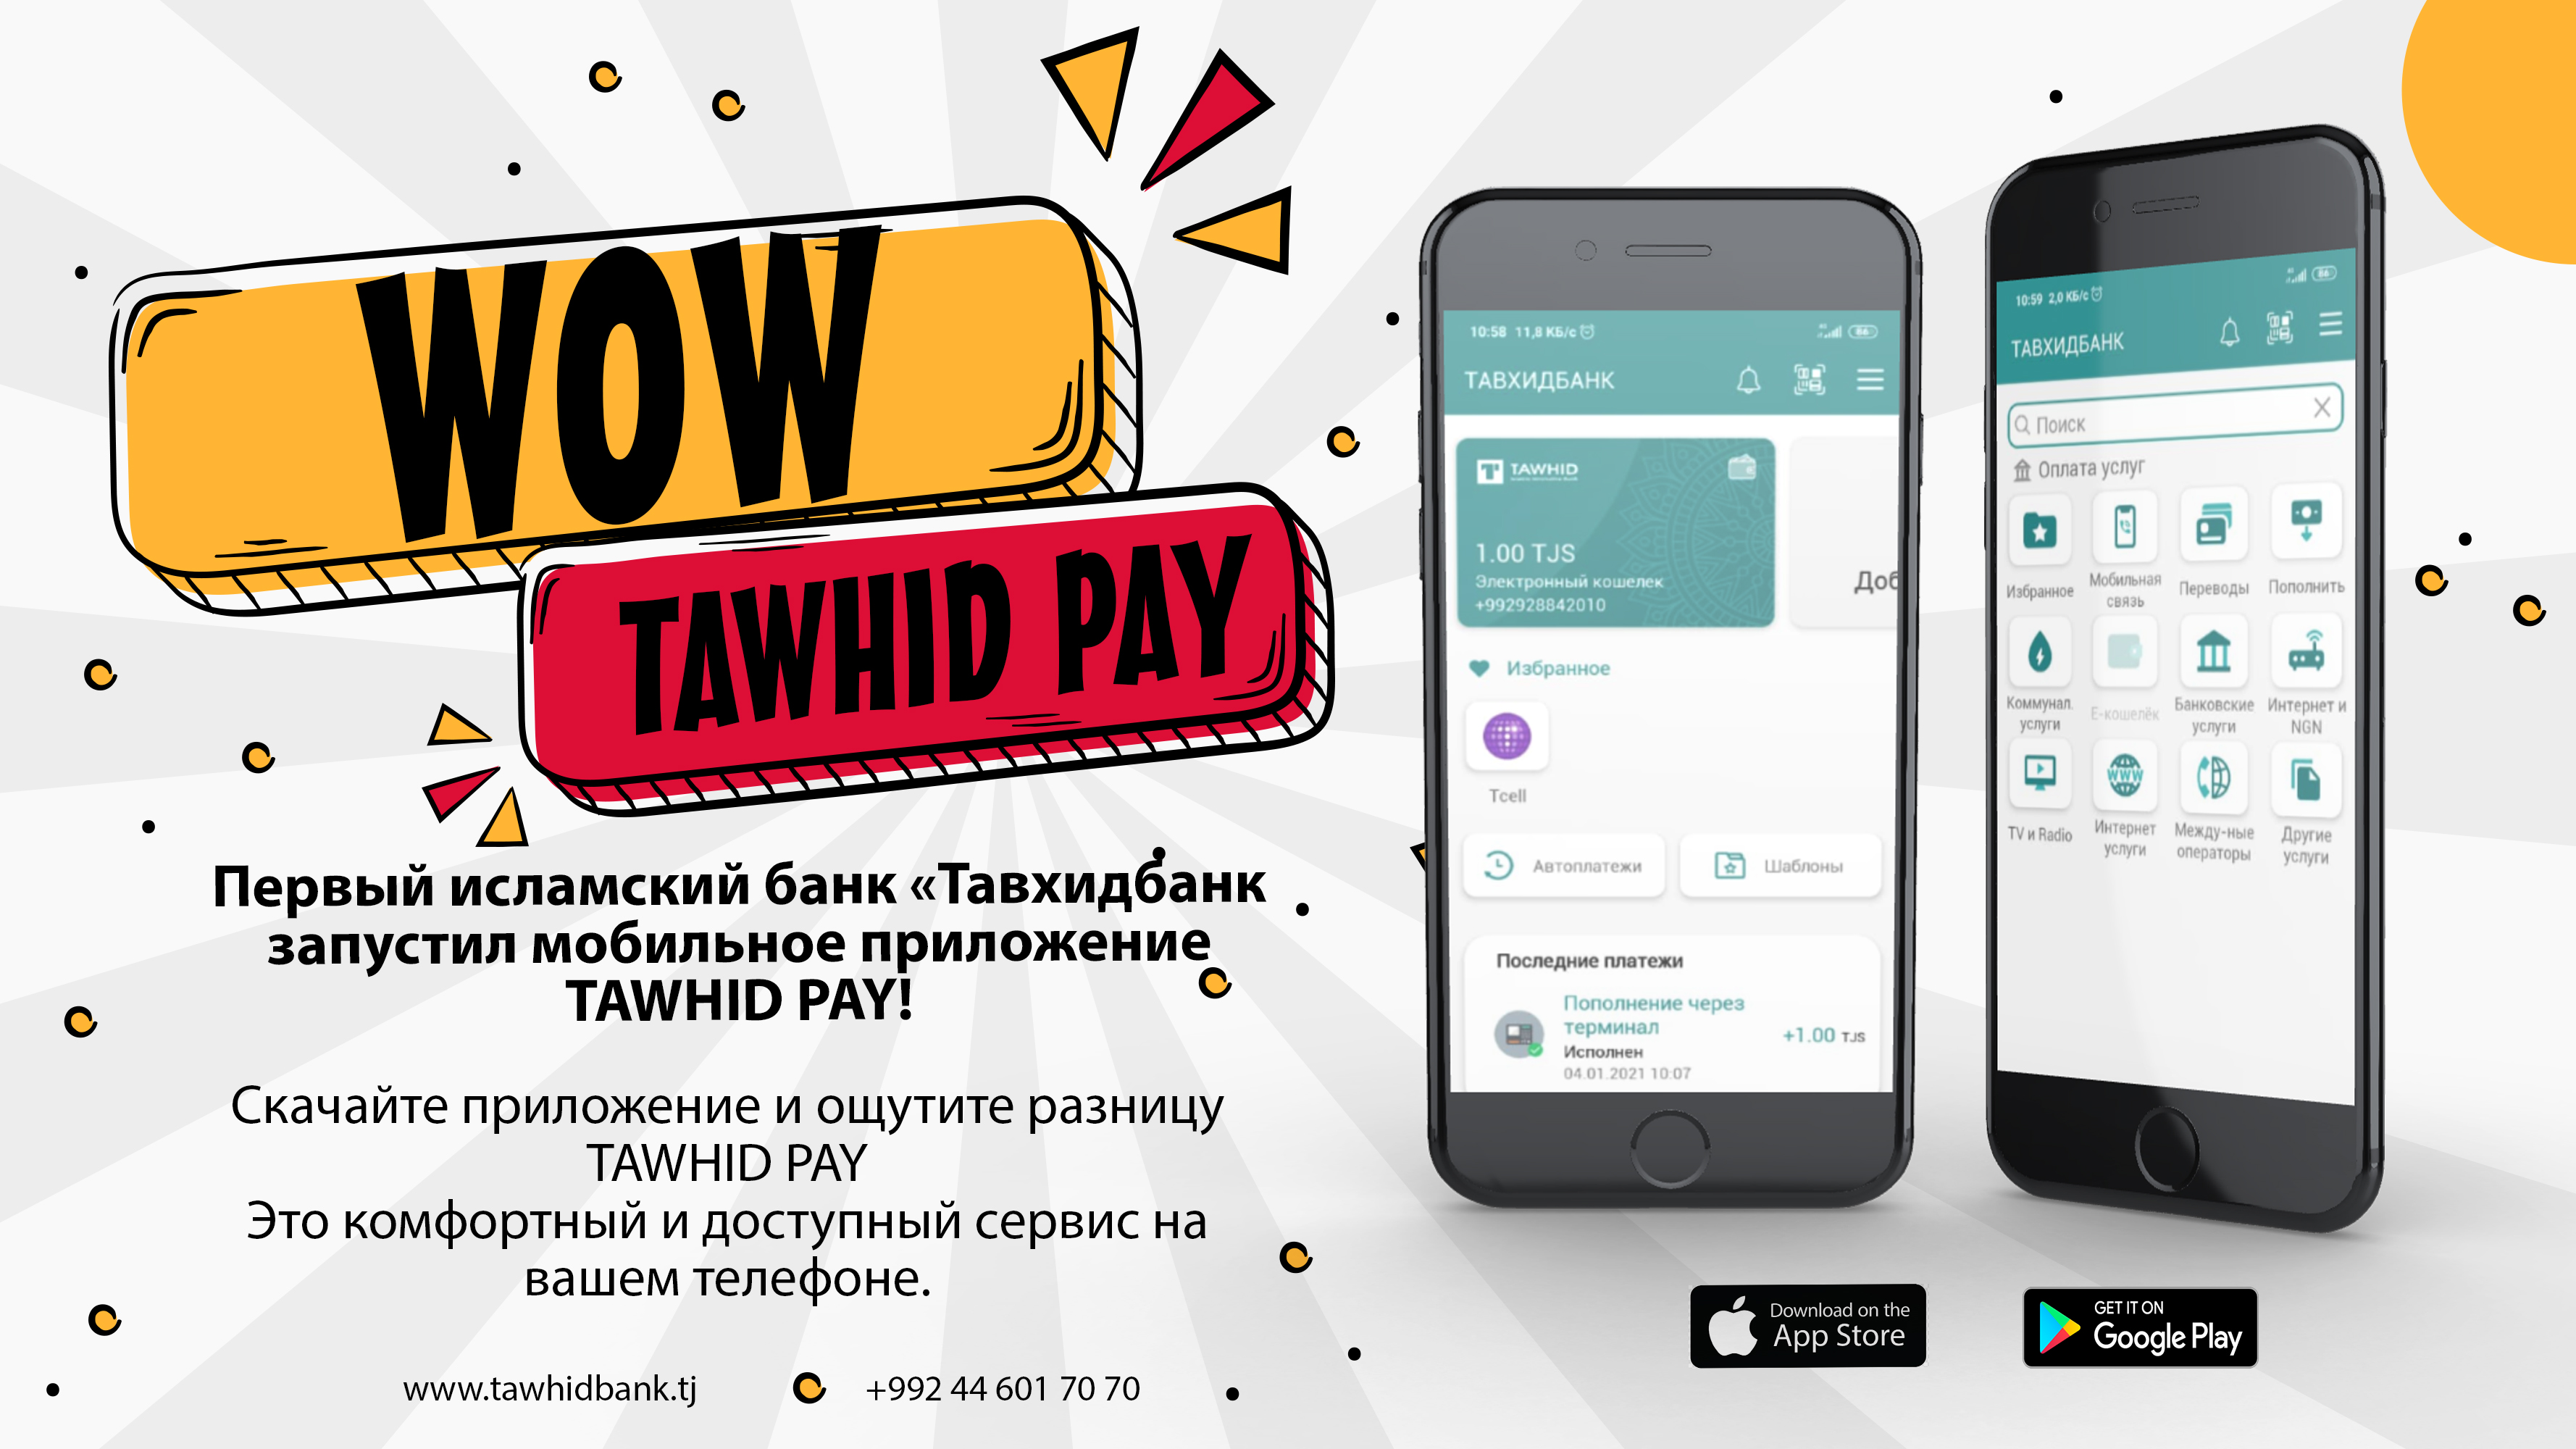 Первый исламский банк «Тавхидбанк запустил мобильное приложение TAWHID PAY!